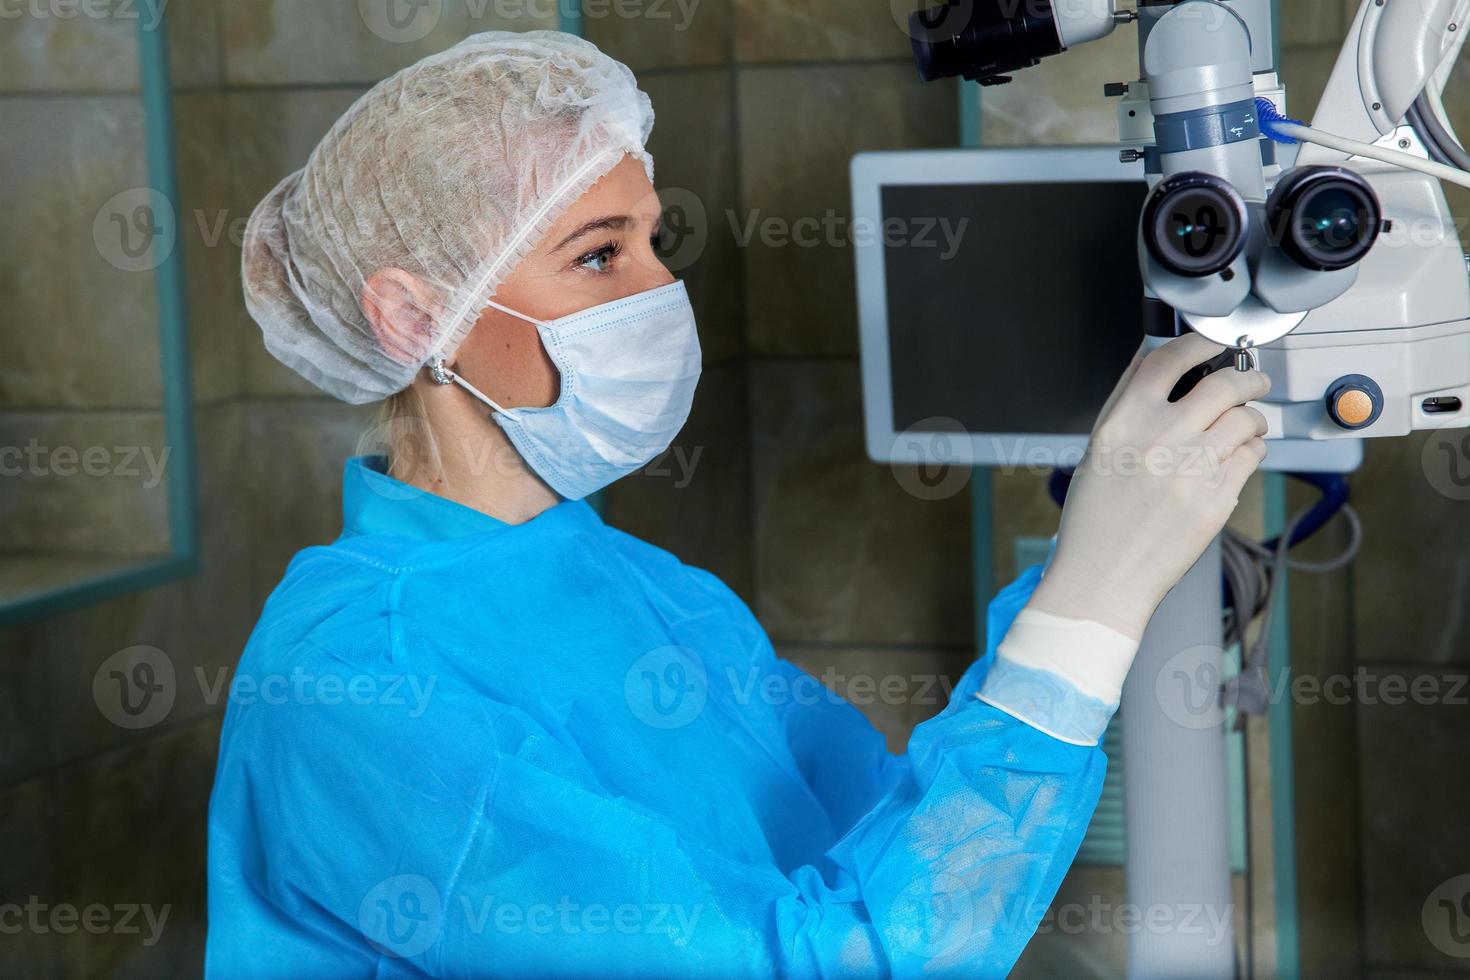 médecin en masque respiratoire cheks microscop chirurgical en salle d'opération photo